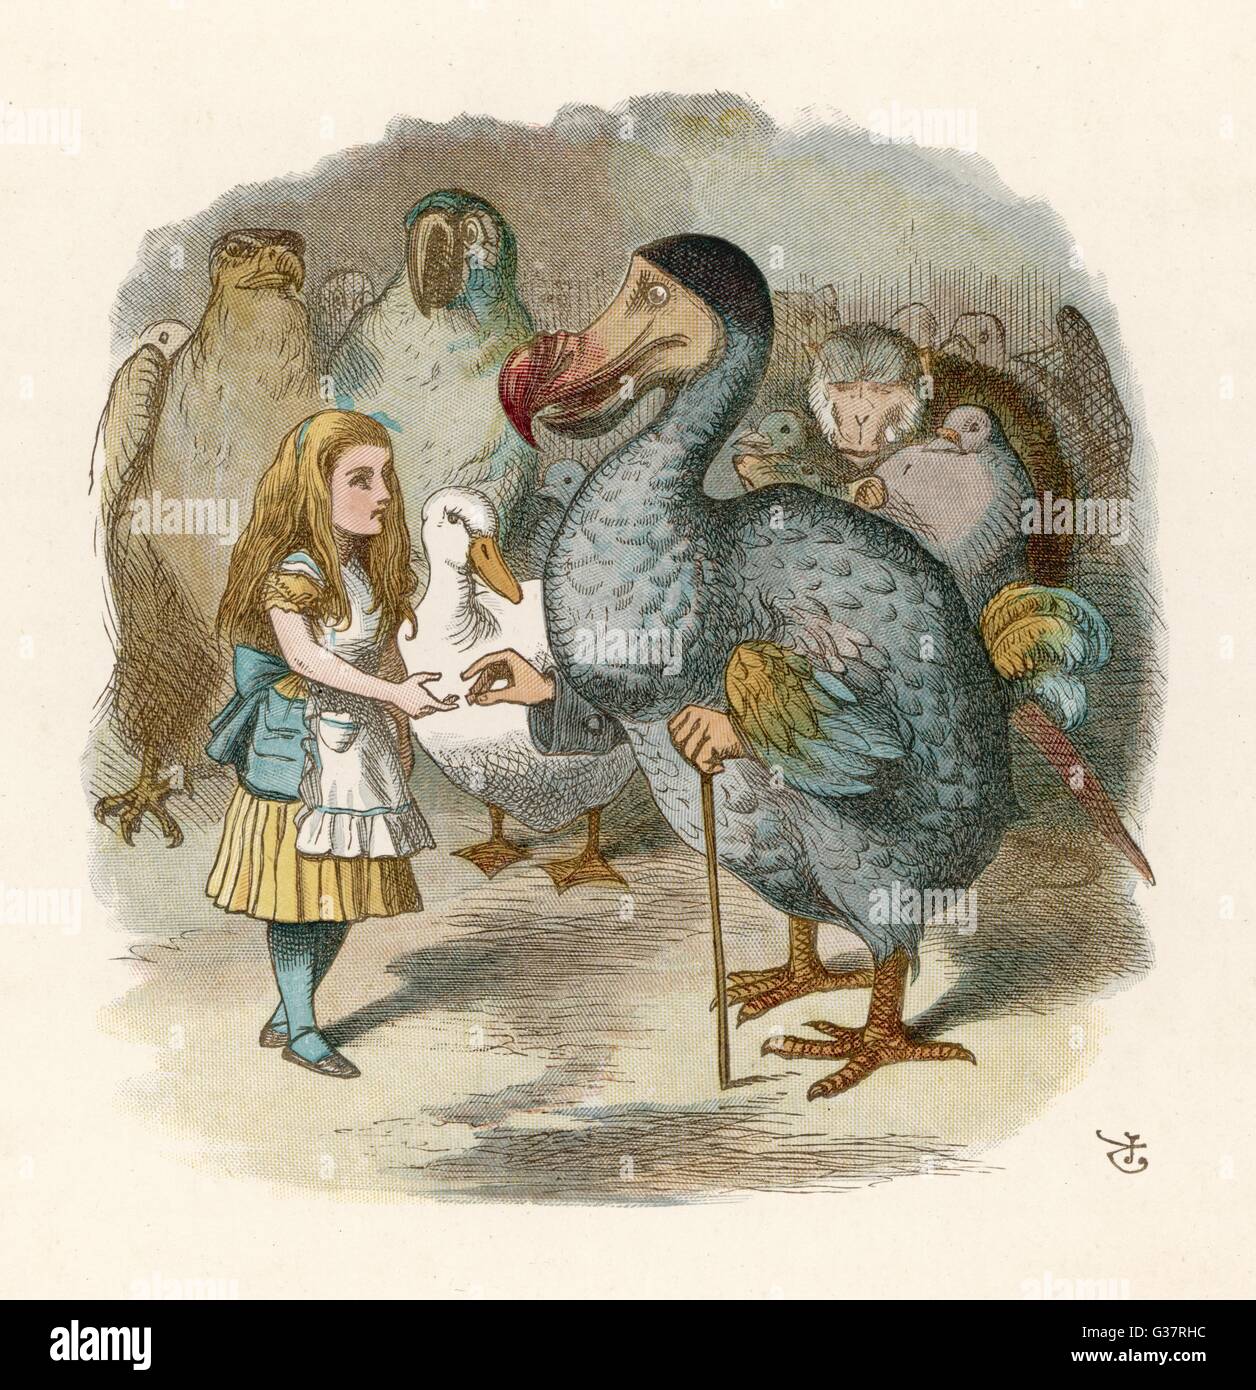 DODO BIRD Scrabble Necklace. Alice in Wonderland Vintage Image 